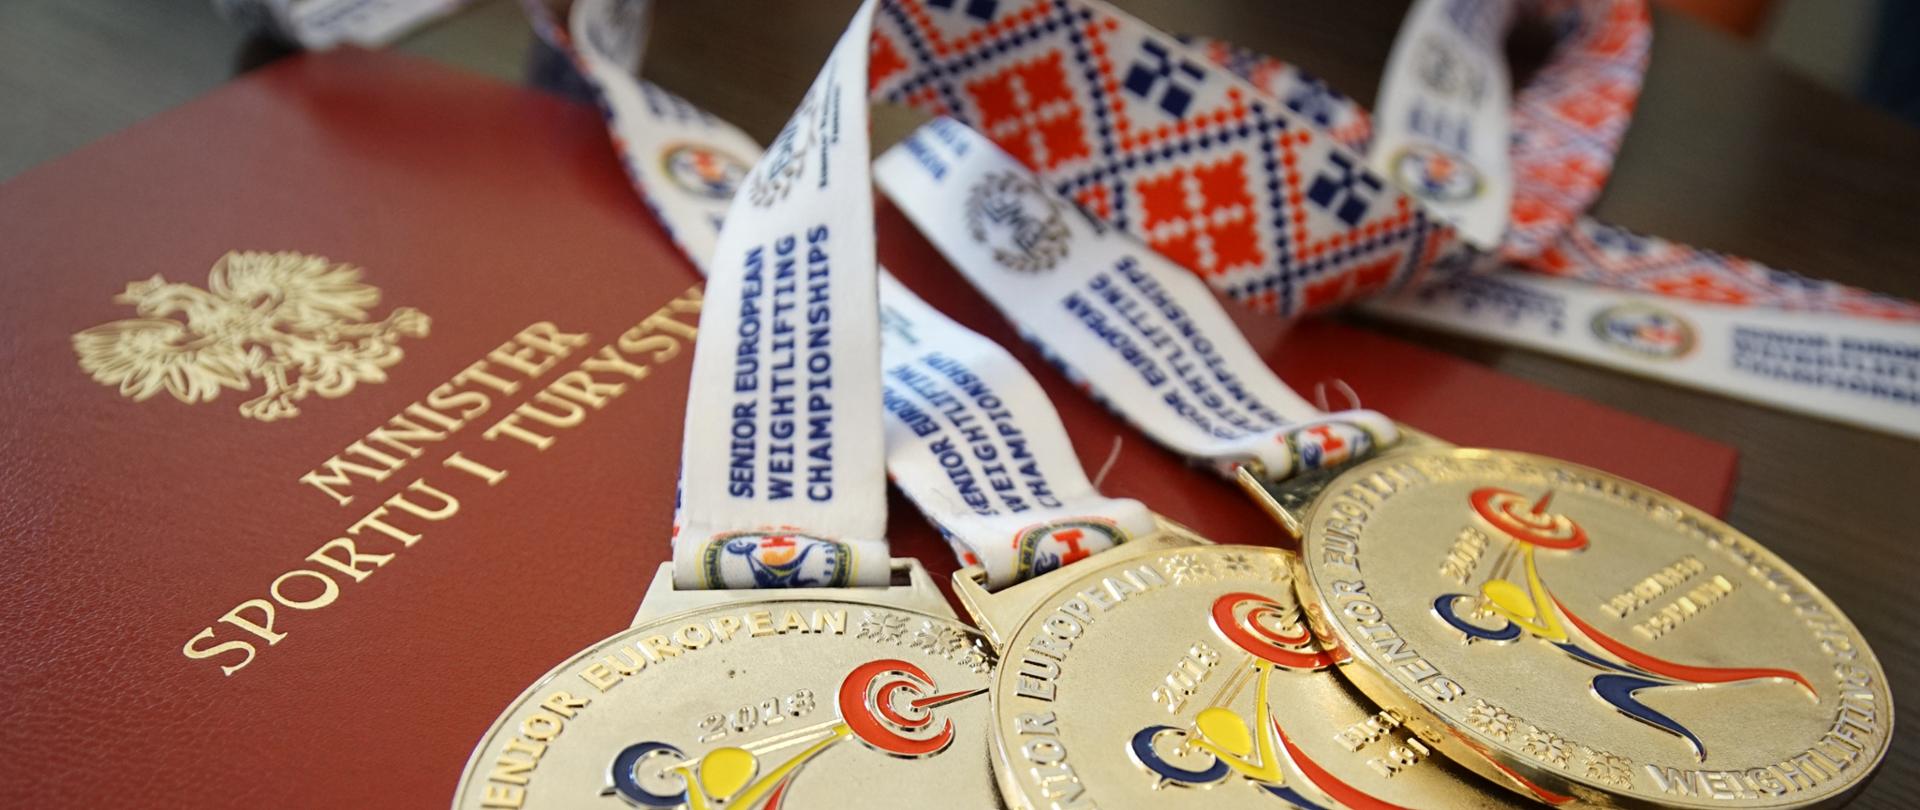 Medaliści mistrzostw Europy w podnoszeniu ciężarów z wizytą w Ministerstwie Sportu i Turystyki